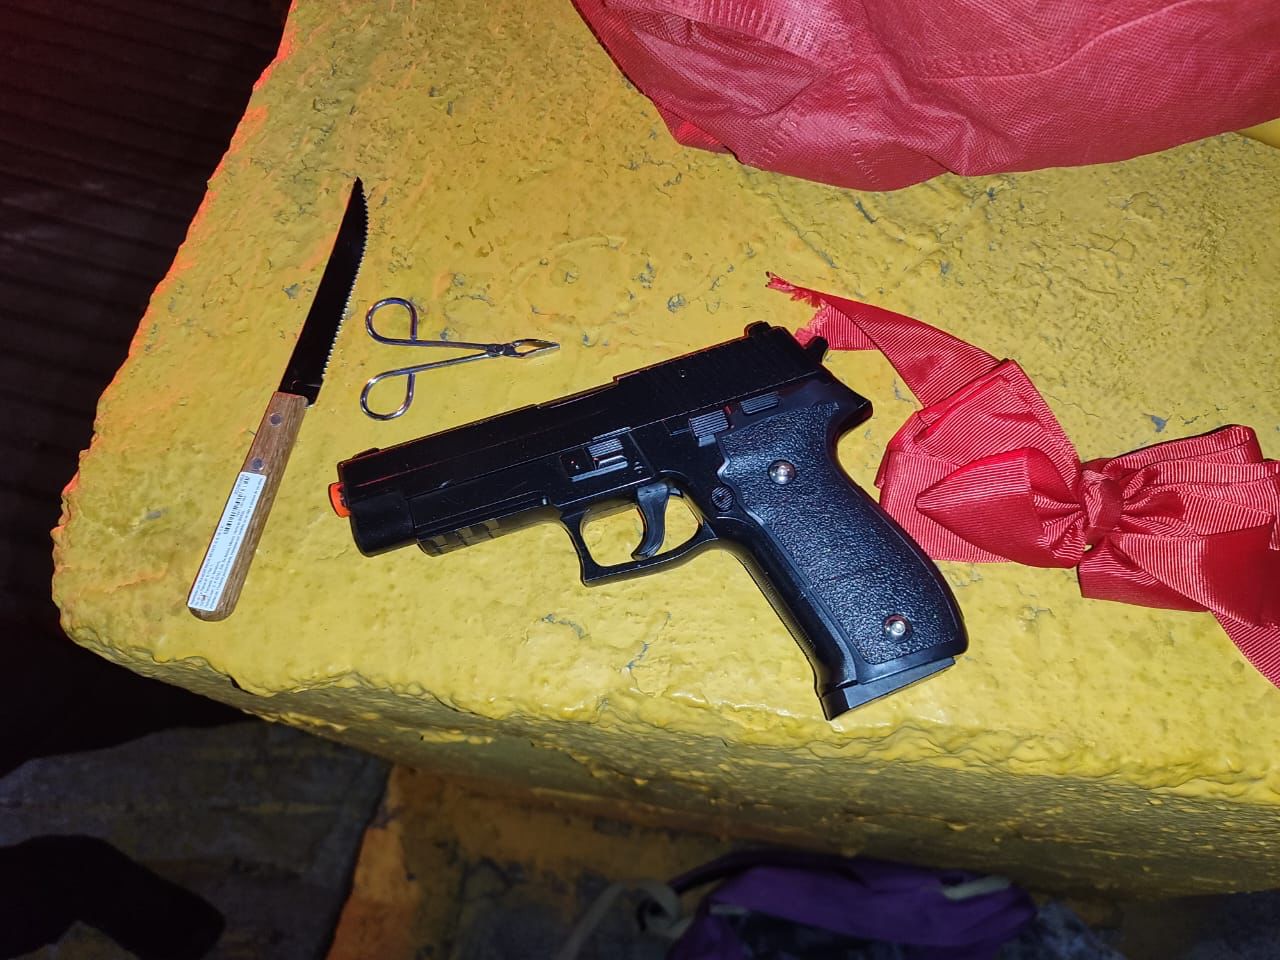 La policía de Tlalnepantla aseguró una pistola y un cuchillo a Jonathan N, presuntamente, los usaba para amenazar a sus víctimas. Foto: Cortesía